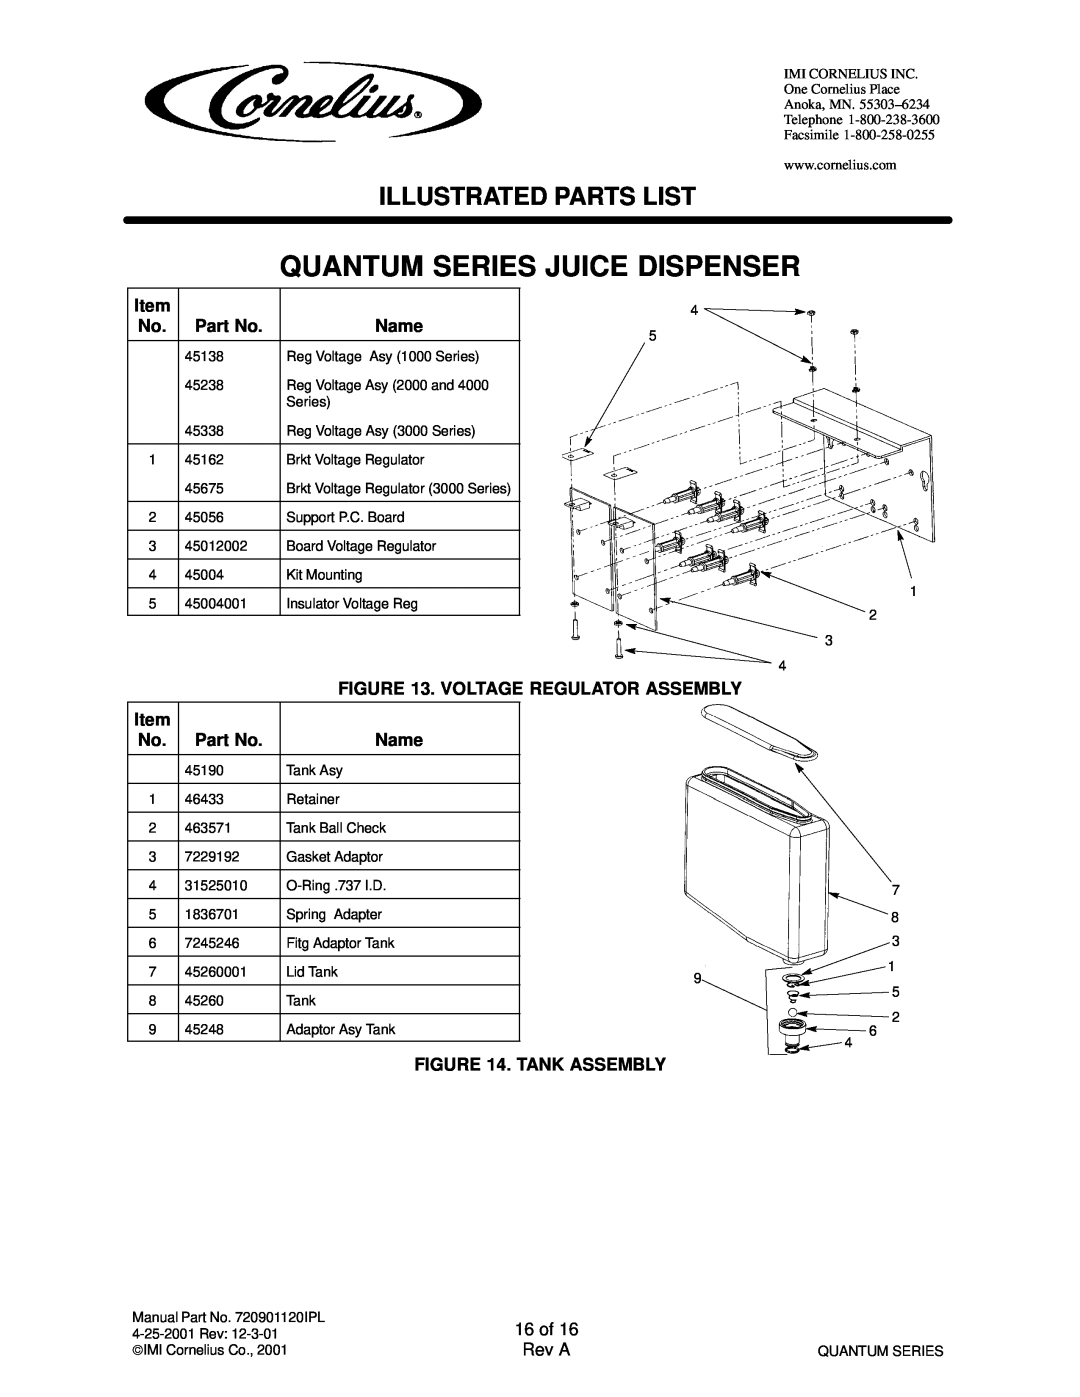 Cornelius QUANTUM SERIES Quantum Series Juice Dispenser, Illustrated Parts List, Brkt Voltage Regulator 3000 Series 